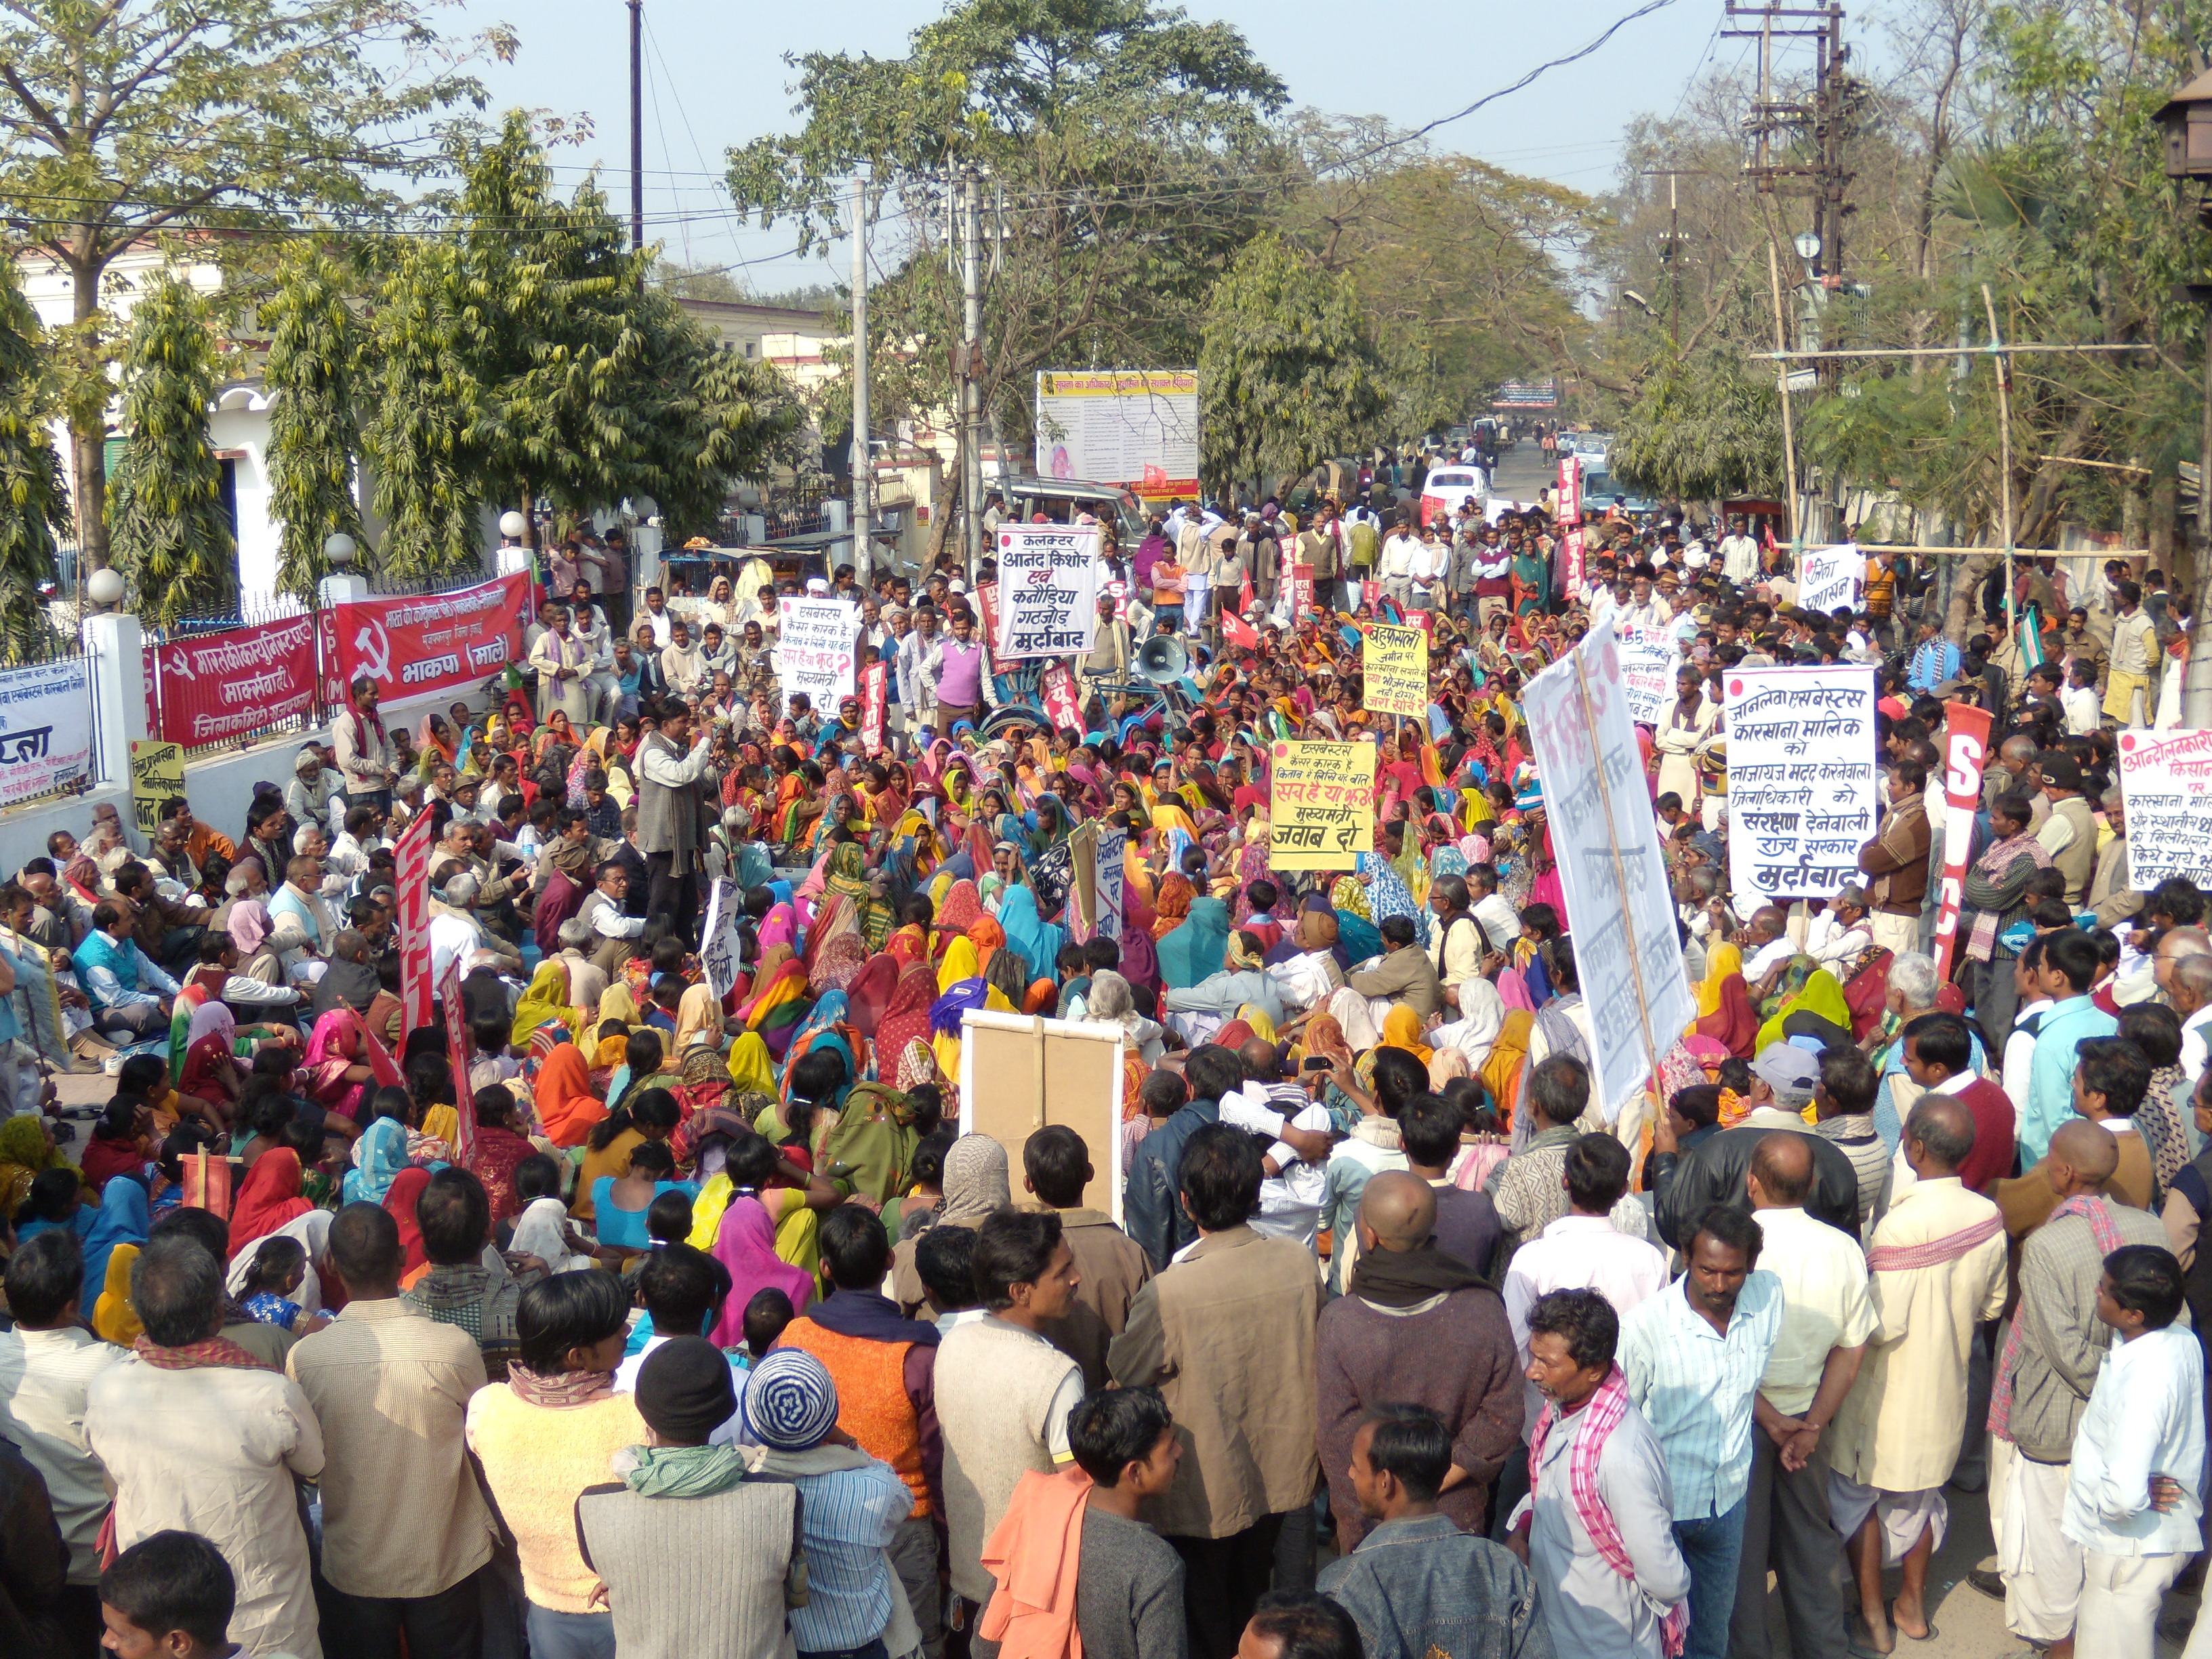 Protest gainst the proposed asbestos plant in Muzaffarpur, Bihar